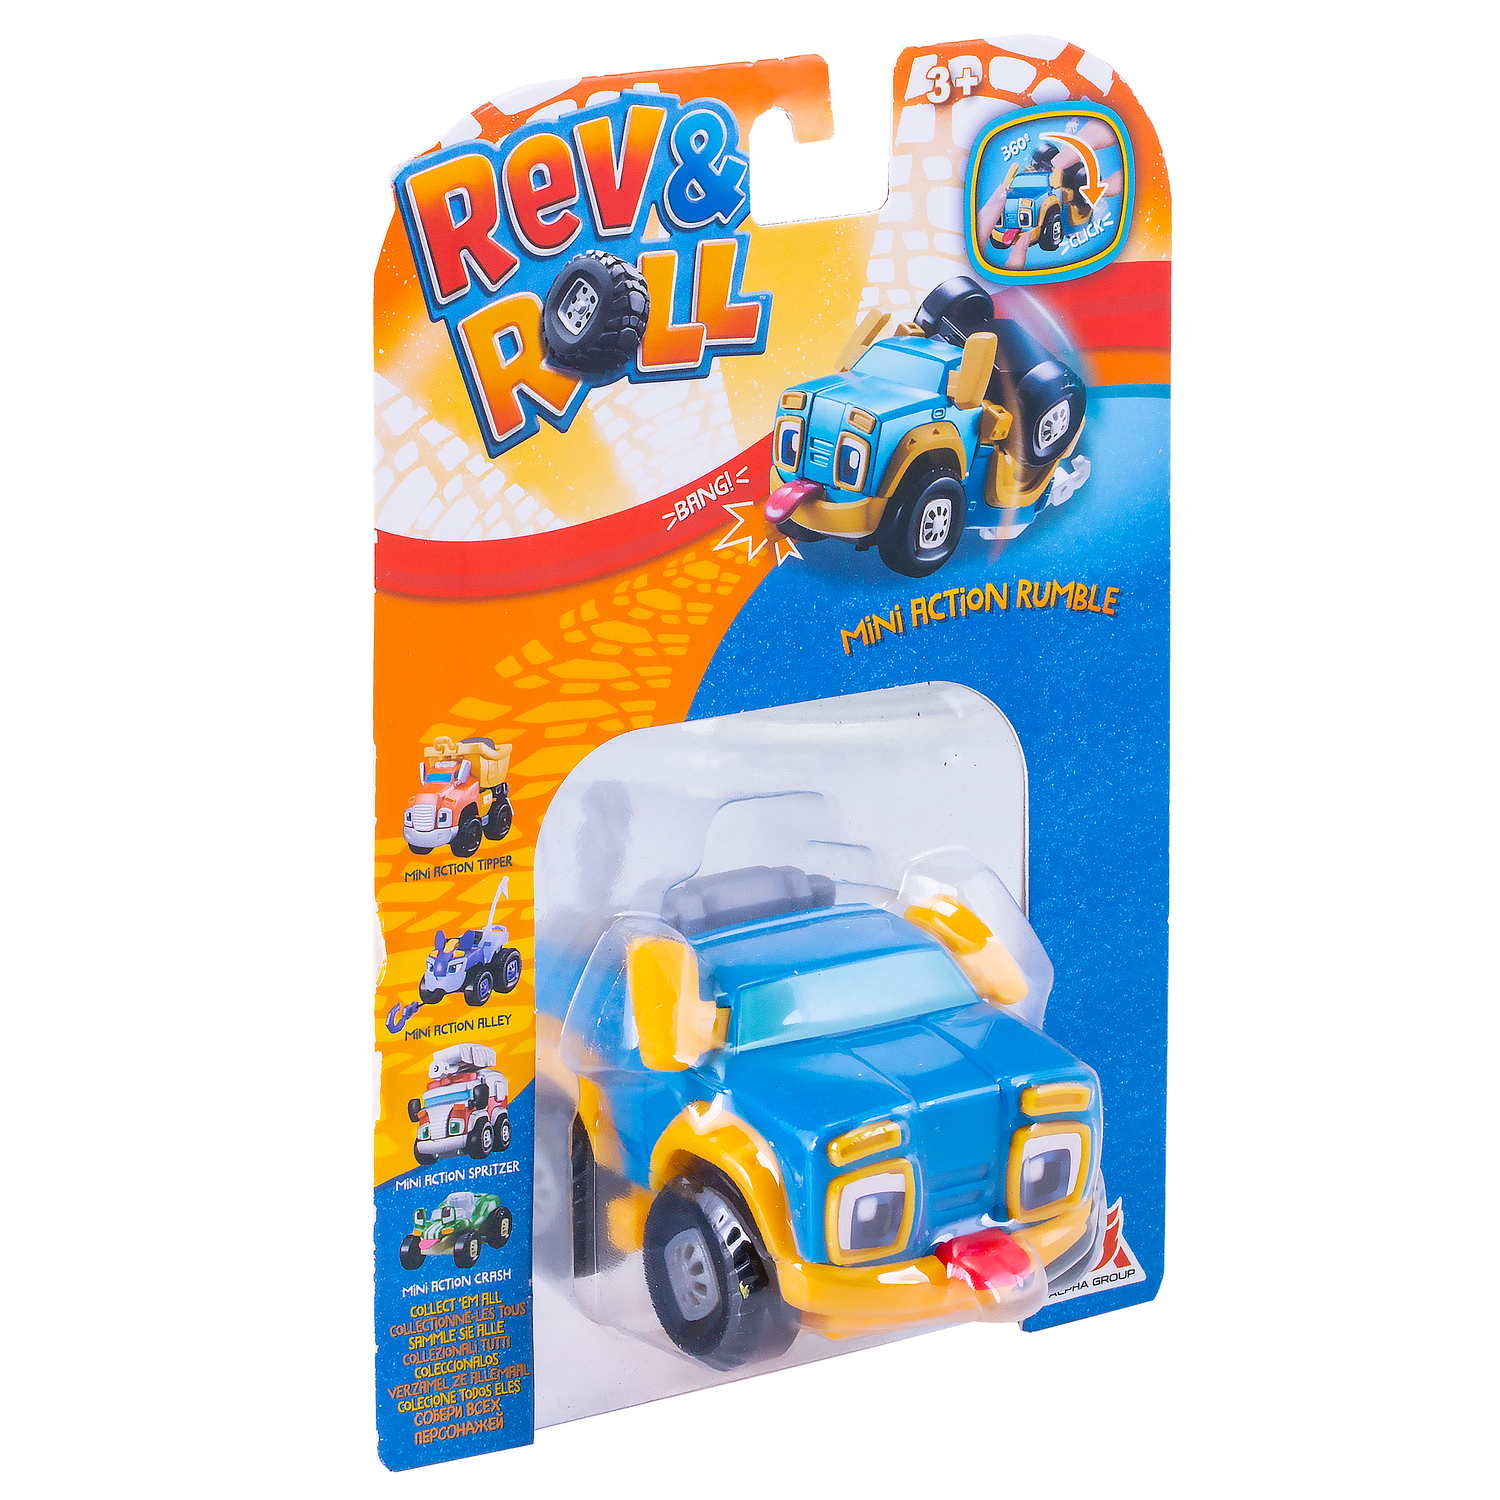 Игрушка Rev and Roll мини машинка Рамбл EU881110 - фото 2